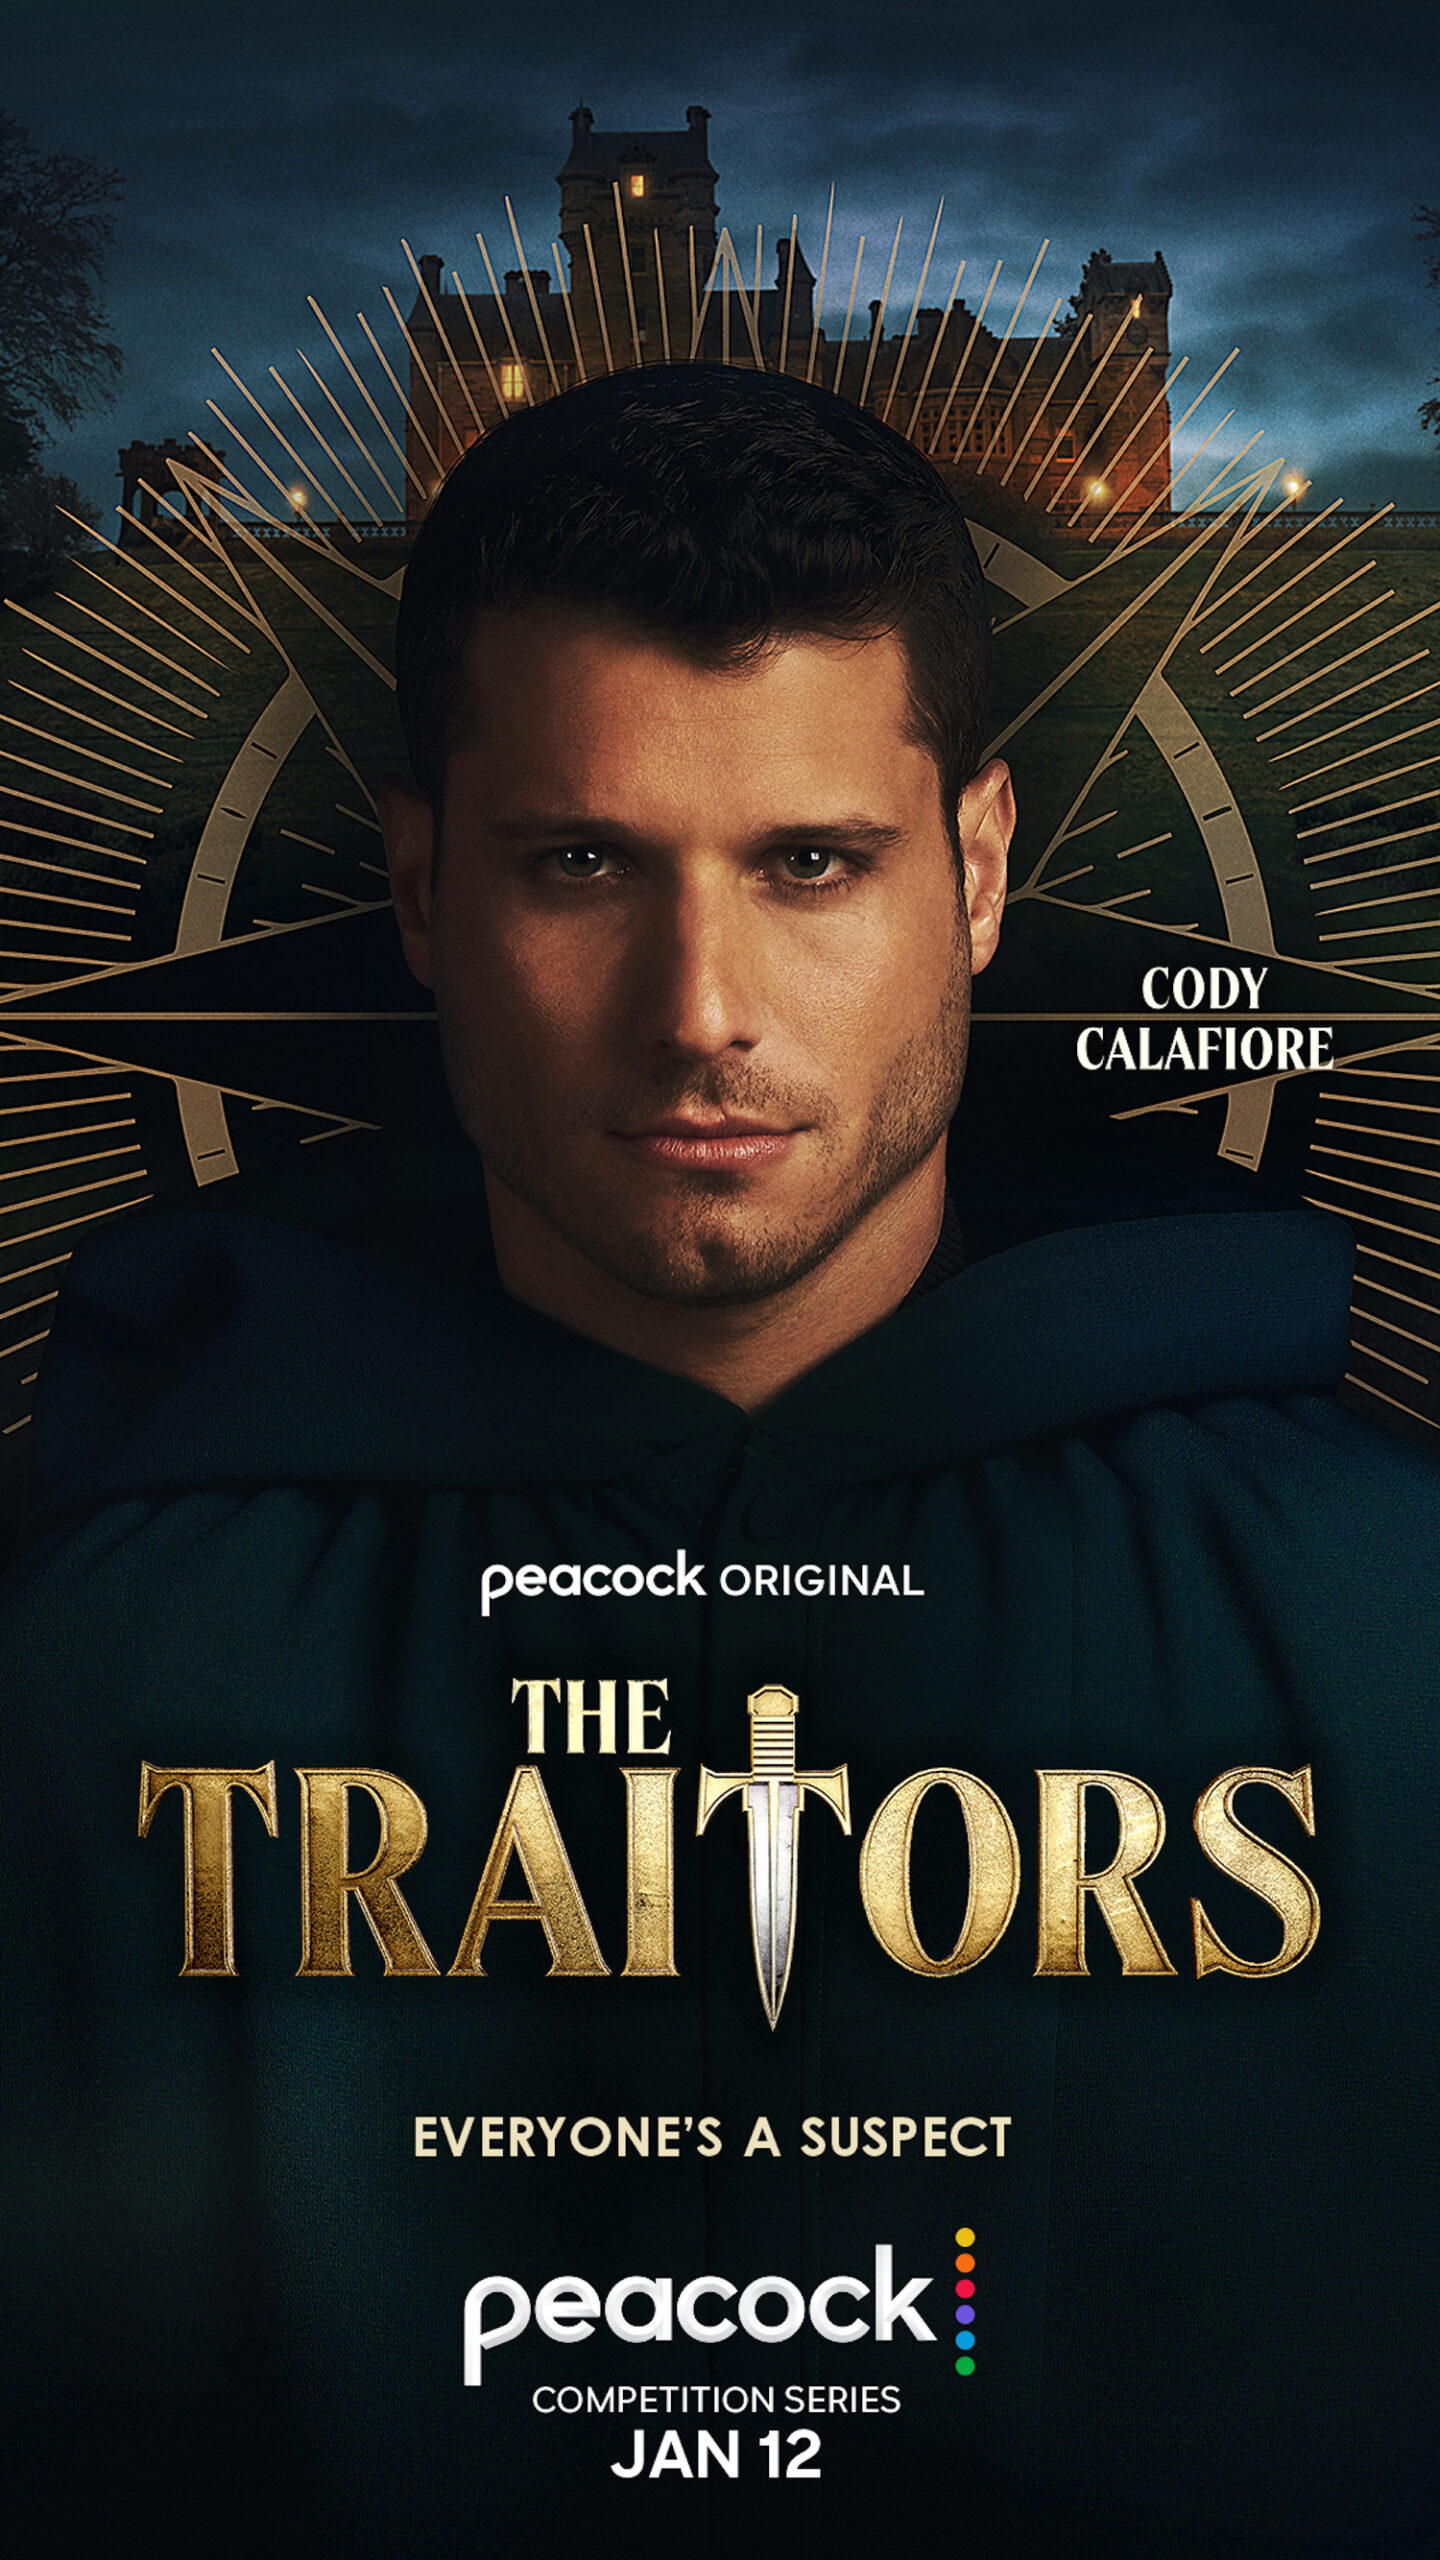 Cody Calafiore for 'The Traitors'